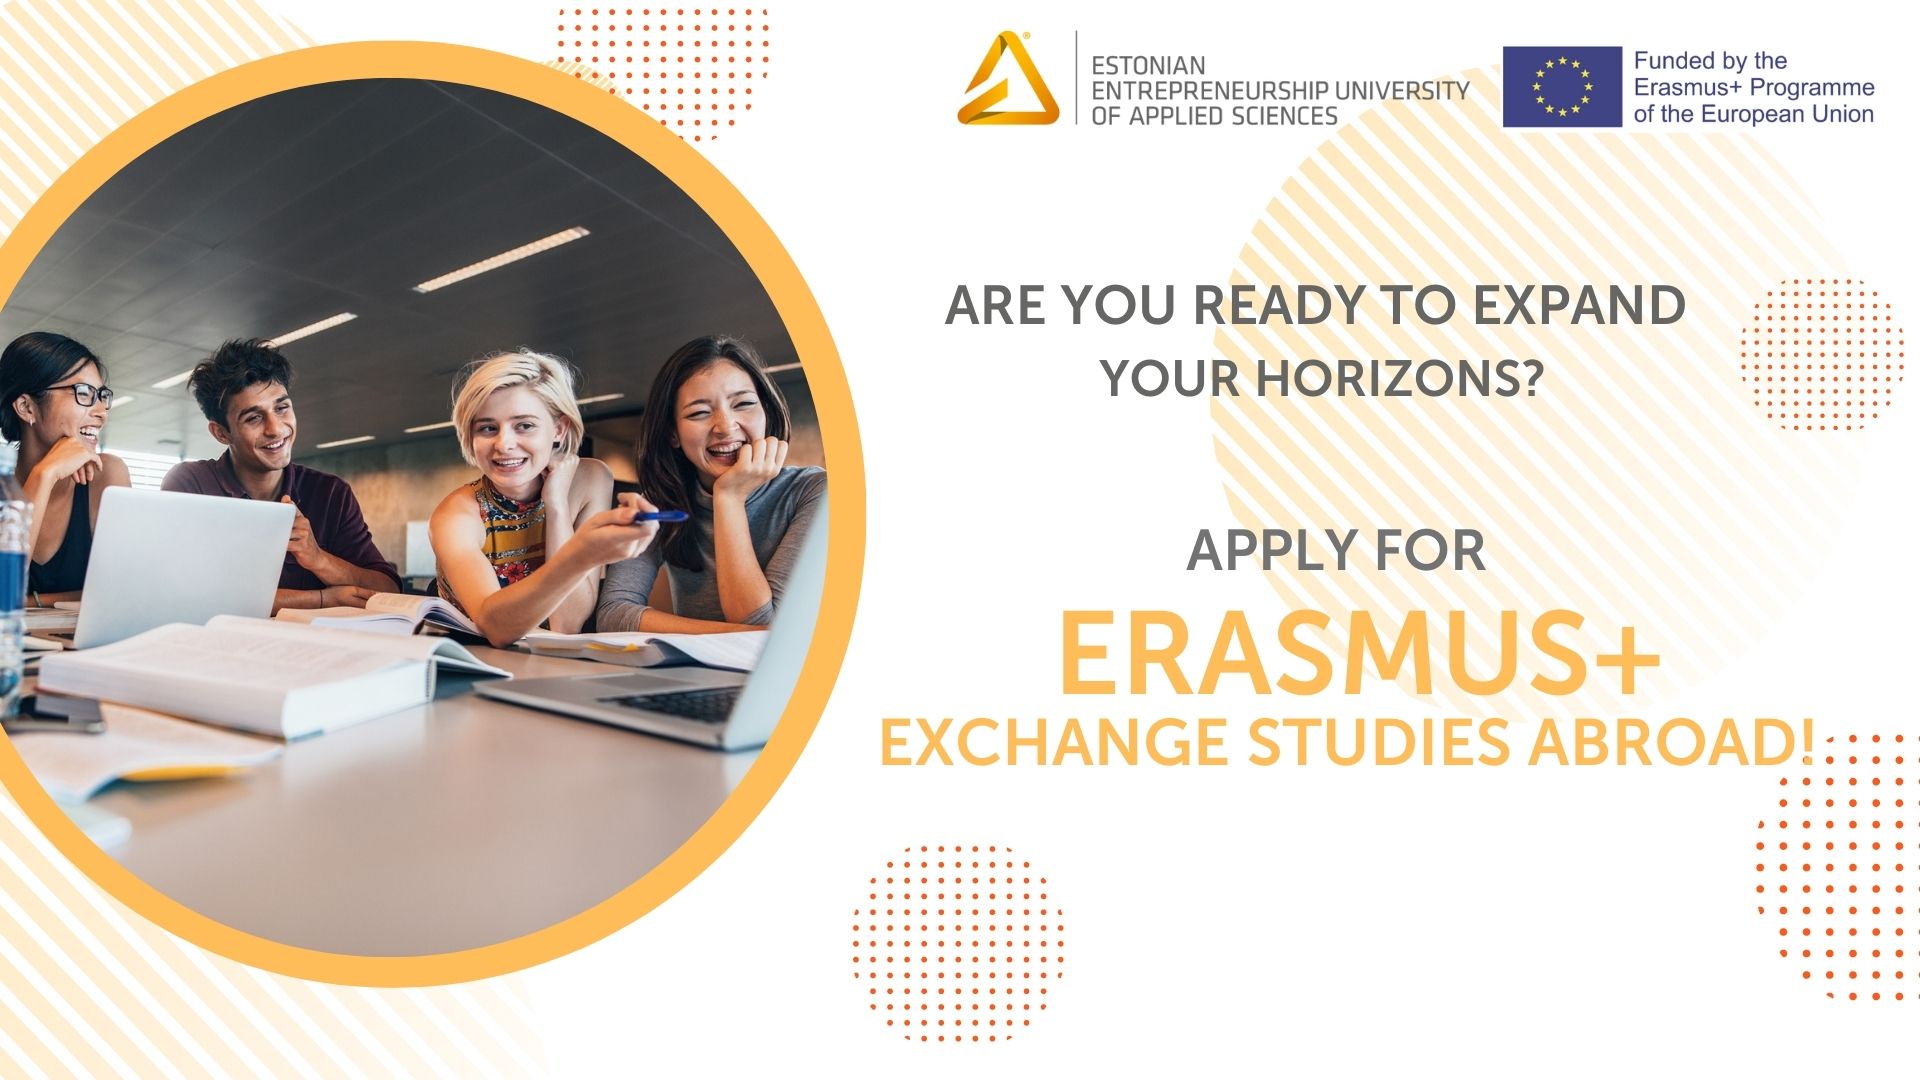 What is Erasmus+? Why choose Erasmus+ exchange studies abroad?